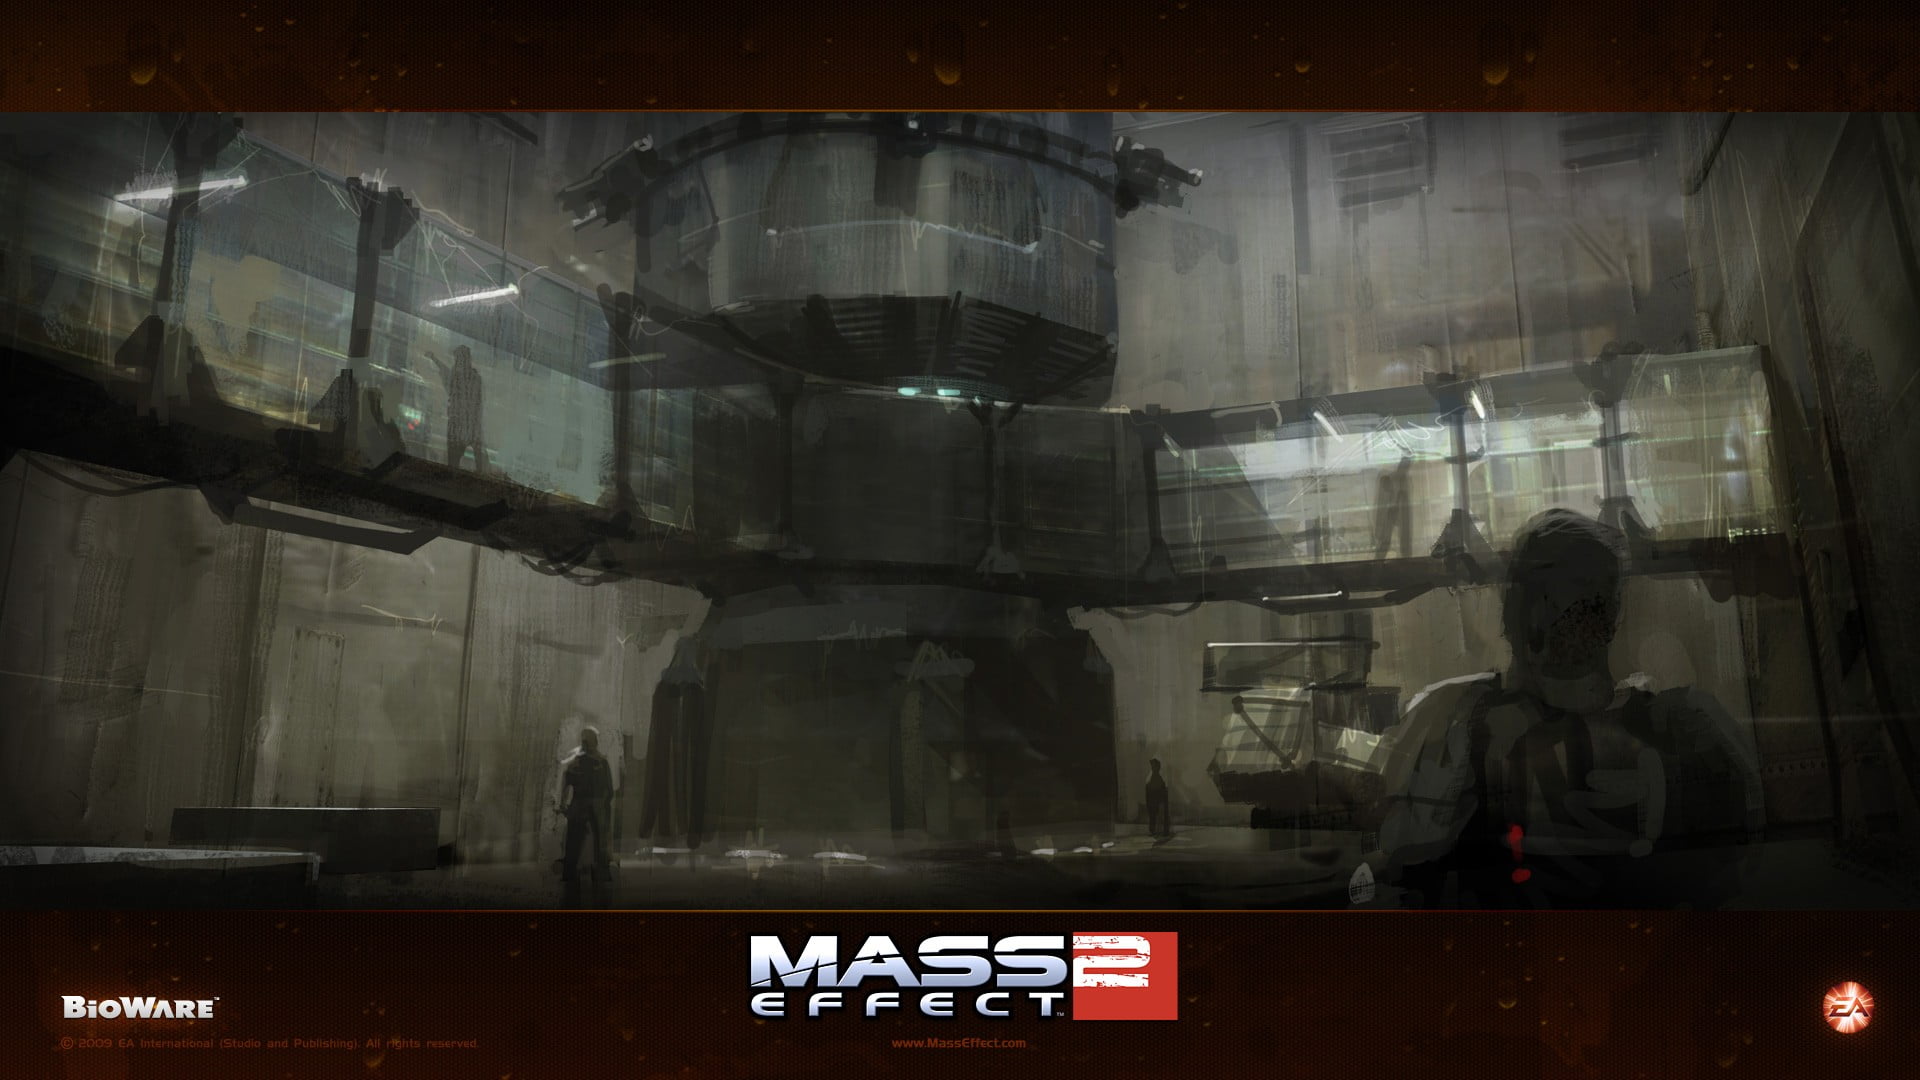 Mass Effect 3 video game digital wallpaper, Mass Effect 2